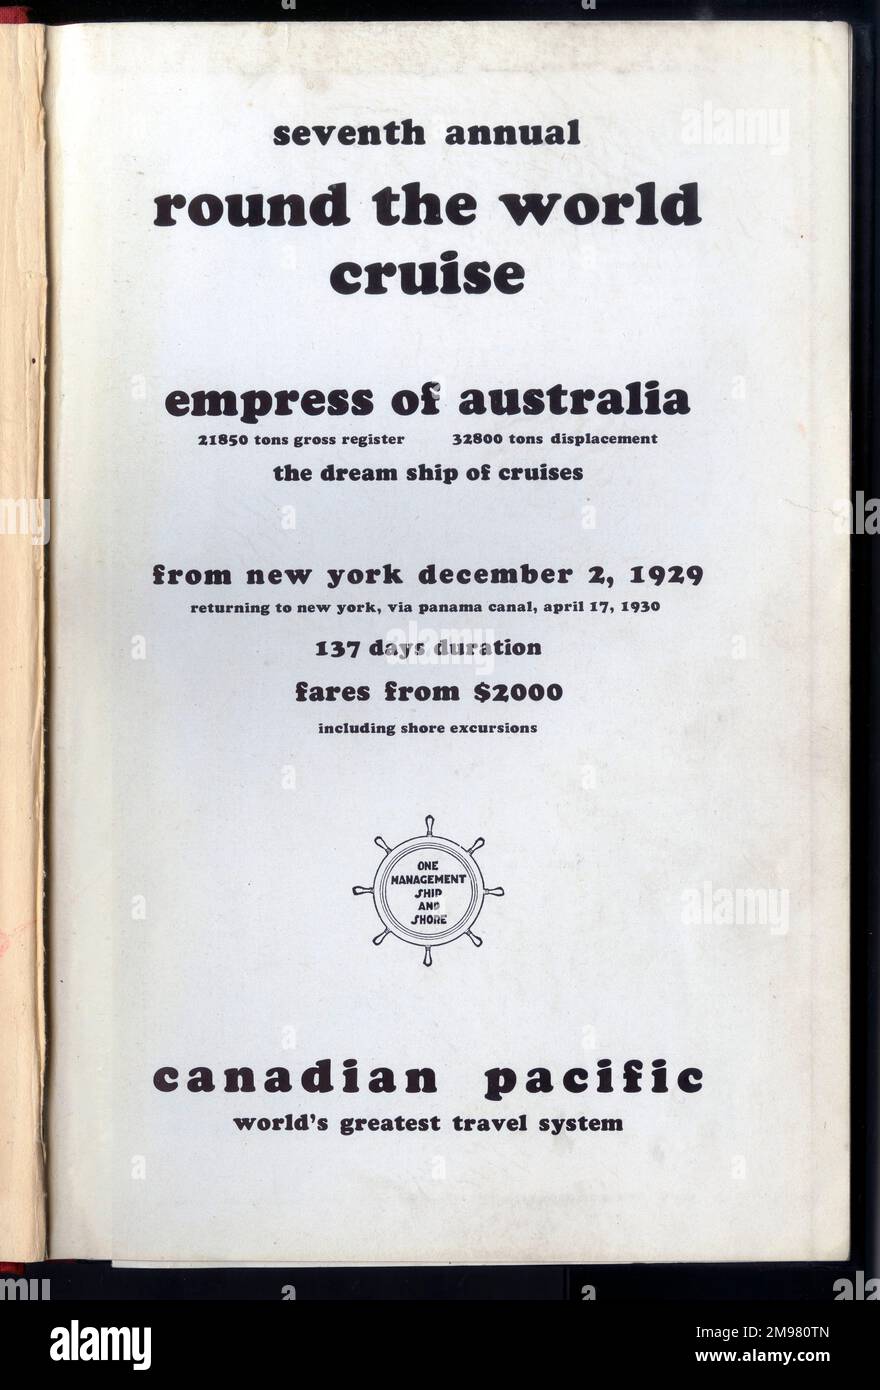 Page de titre, canadien Pacifique, le monde est rond! Septième tour annuel de la croisière mondiale, impératrice d'Australie, départ de New York le 2 décembre 1929, retour à New York le 17 avril 1930. Banque D'Images